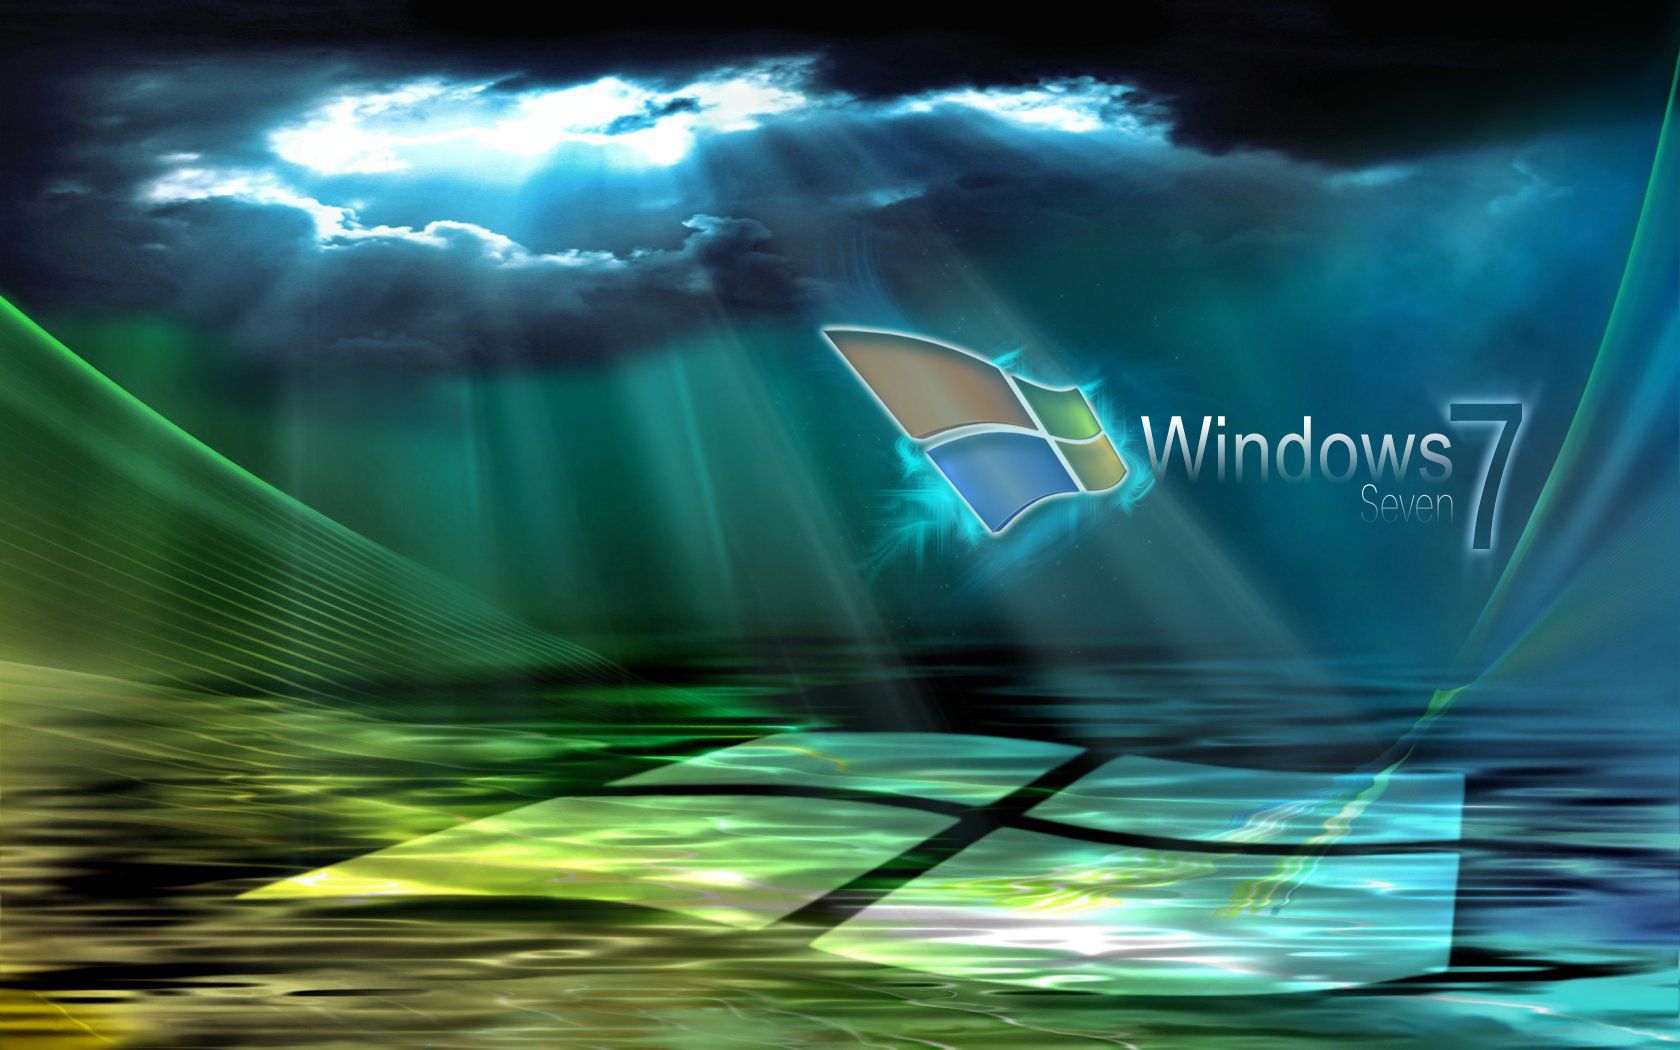 Fondos de pantalla de Windows 7 - FondosMil